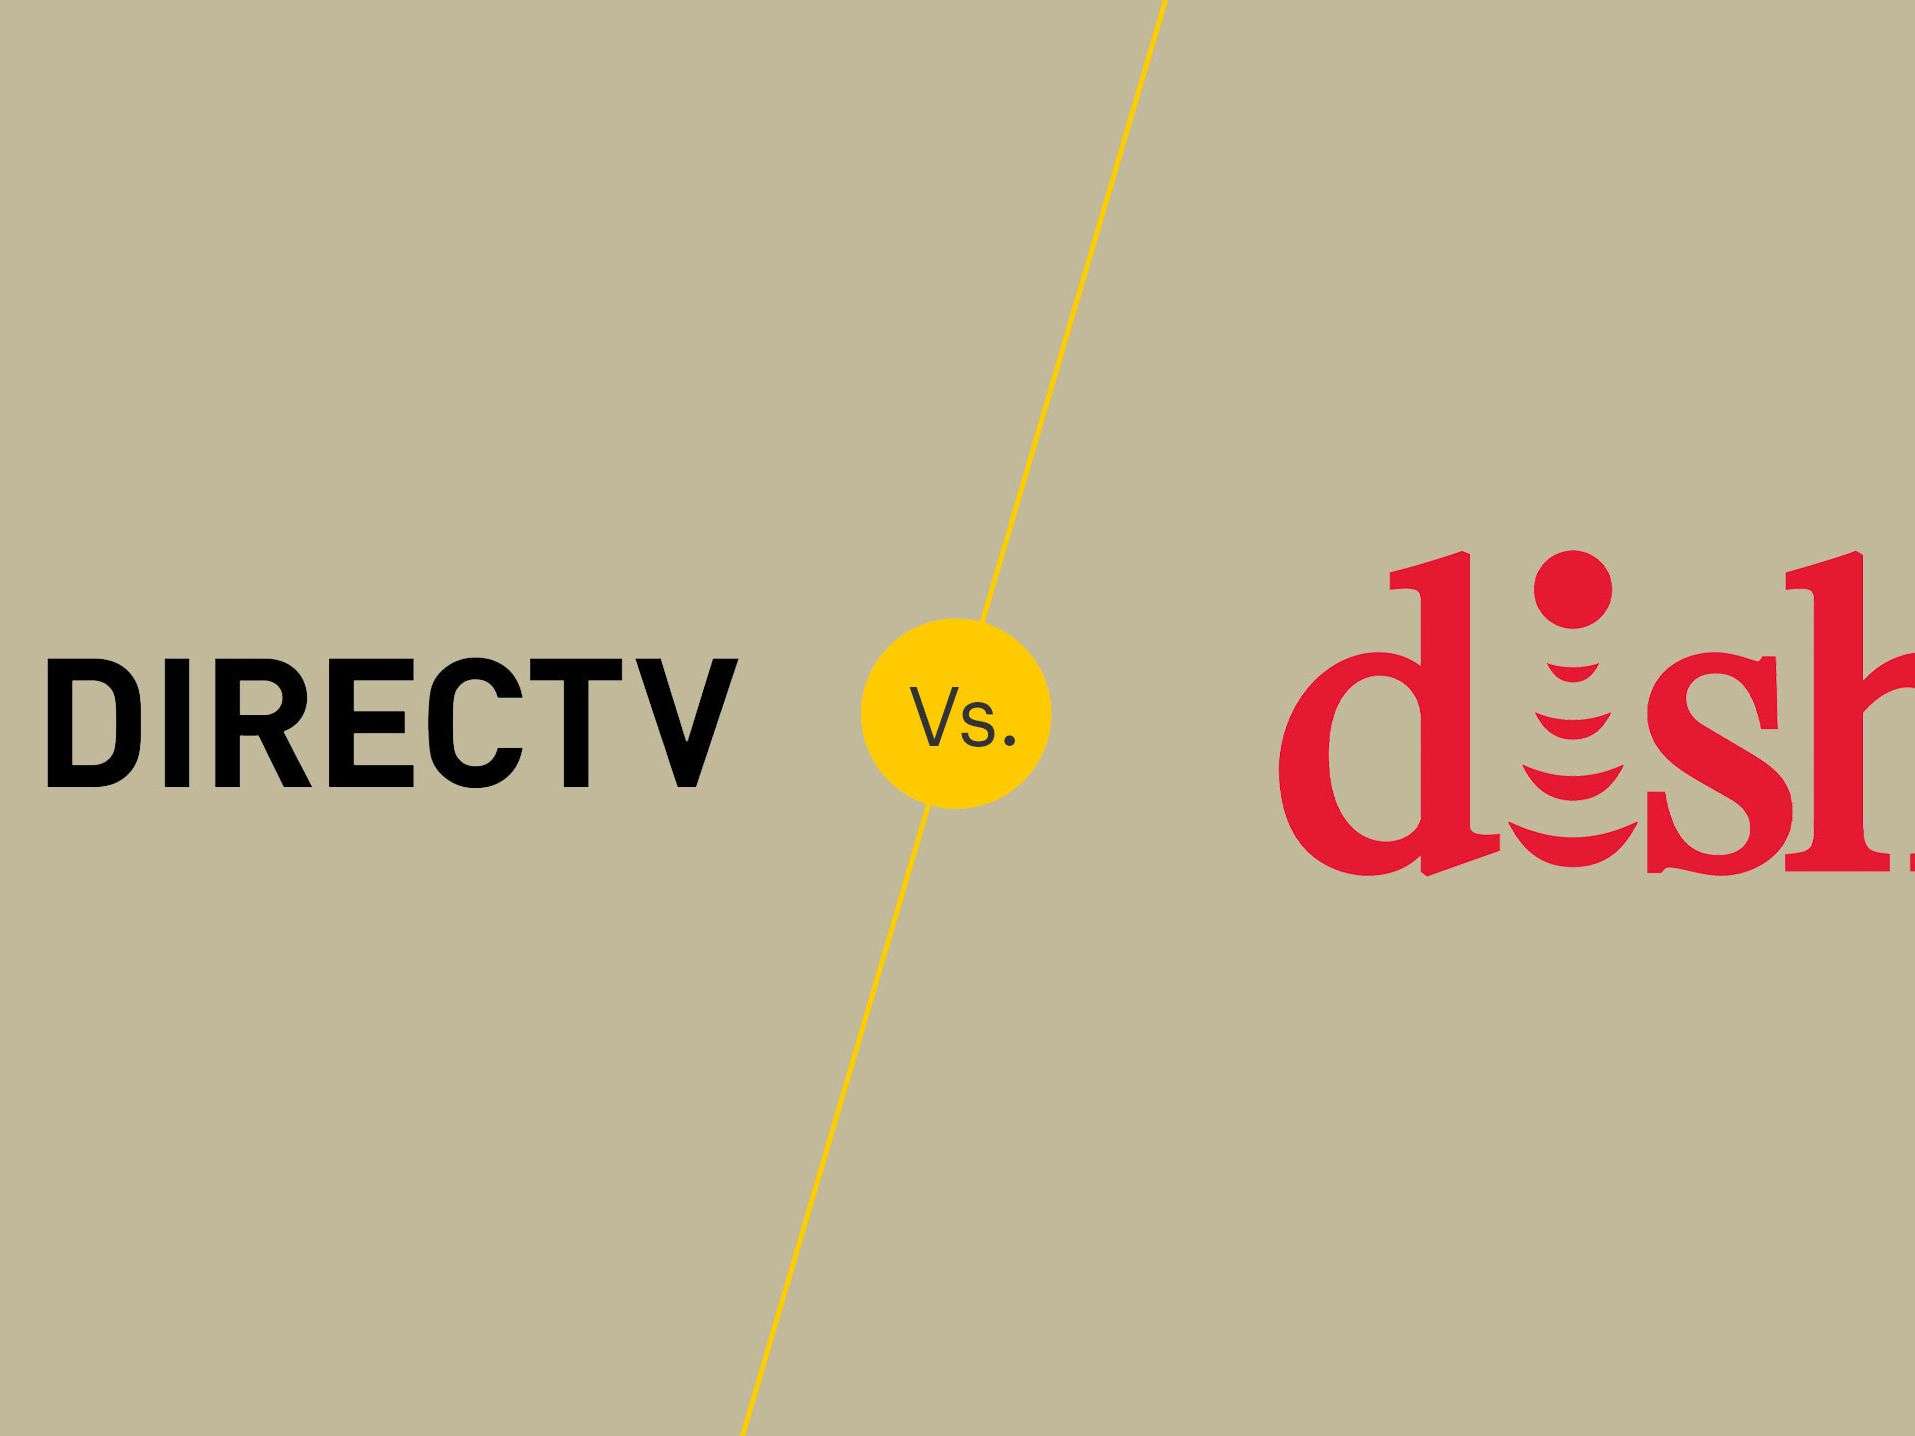 DISH vs DIRECTV